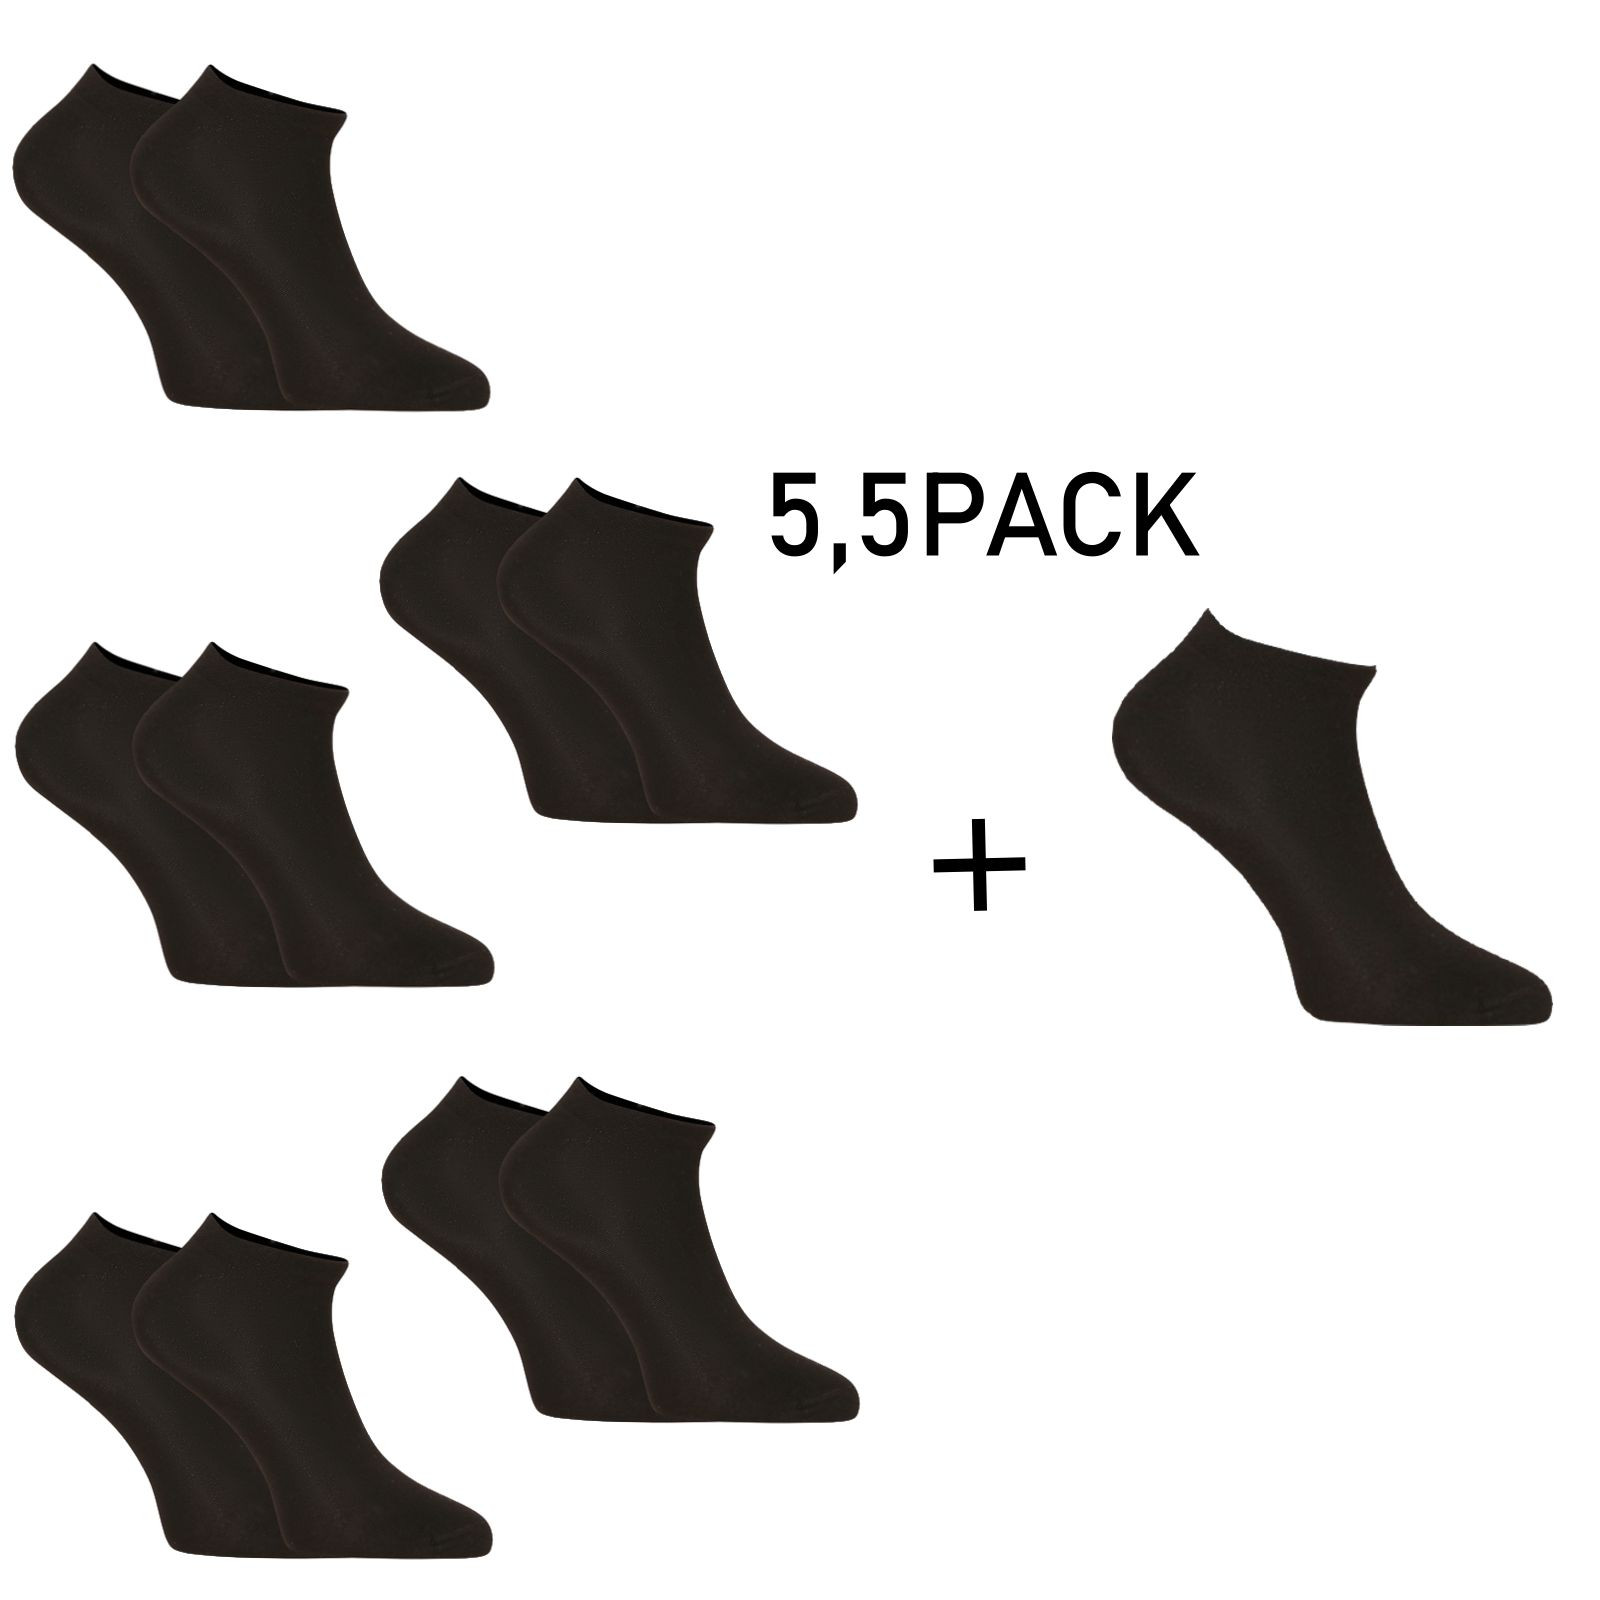 E-shop 5,5PACK ponožky Nedeto nízké bambusové černé